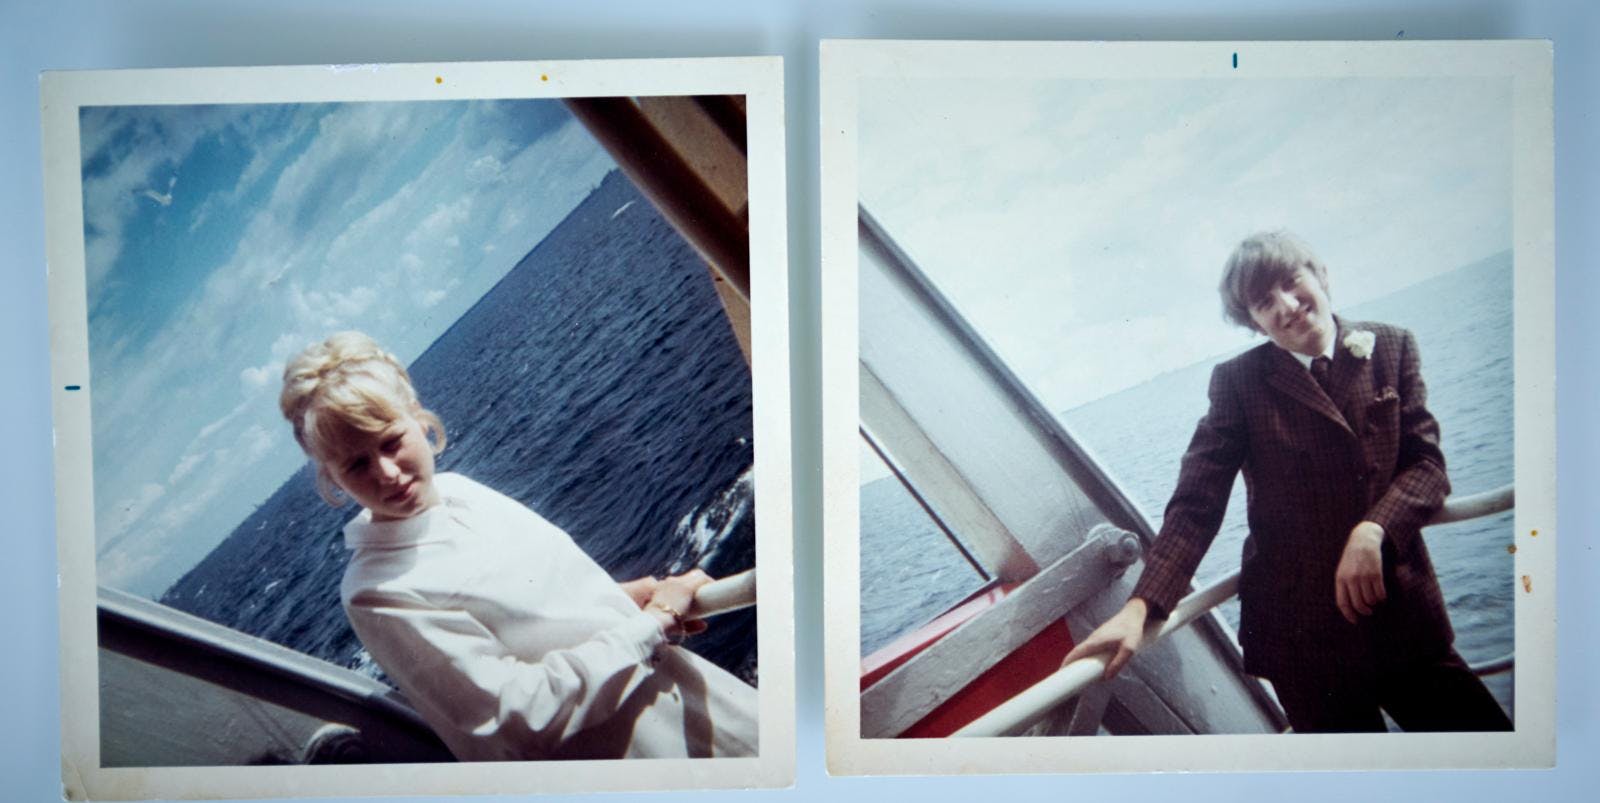 Jacqueline og Flemming havde ikke ret mange penge, da de skulle giftes i 1969. Derfor holdt de brylluppet på Sverigesbåden.
